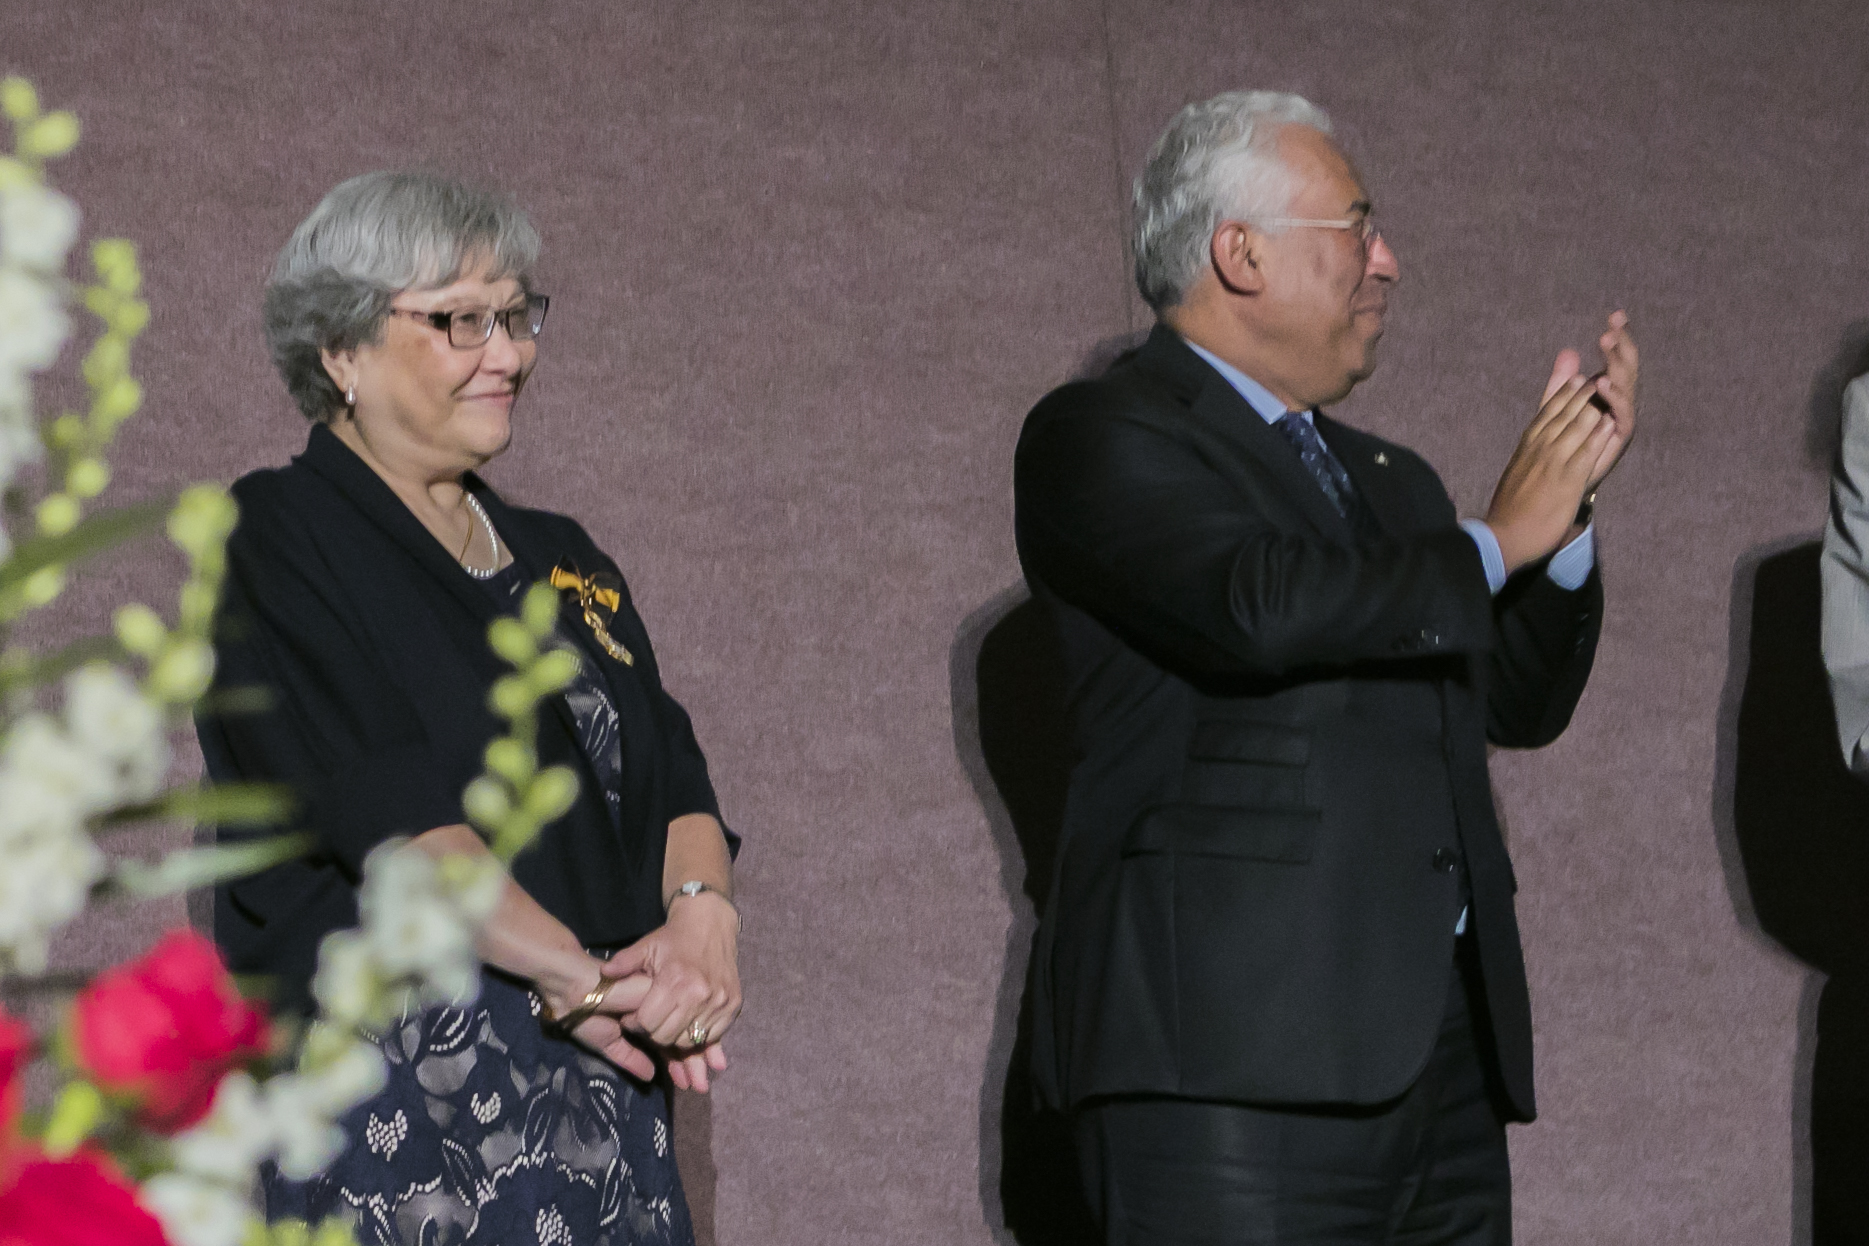 Event_2018 Portuguese Prime Minister Reception160